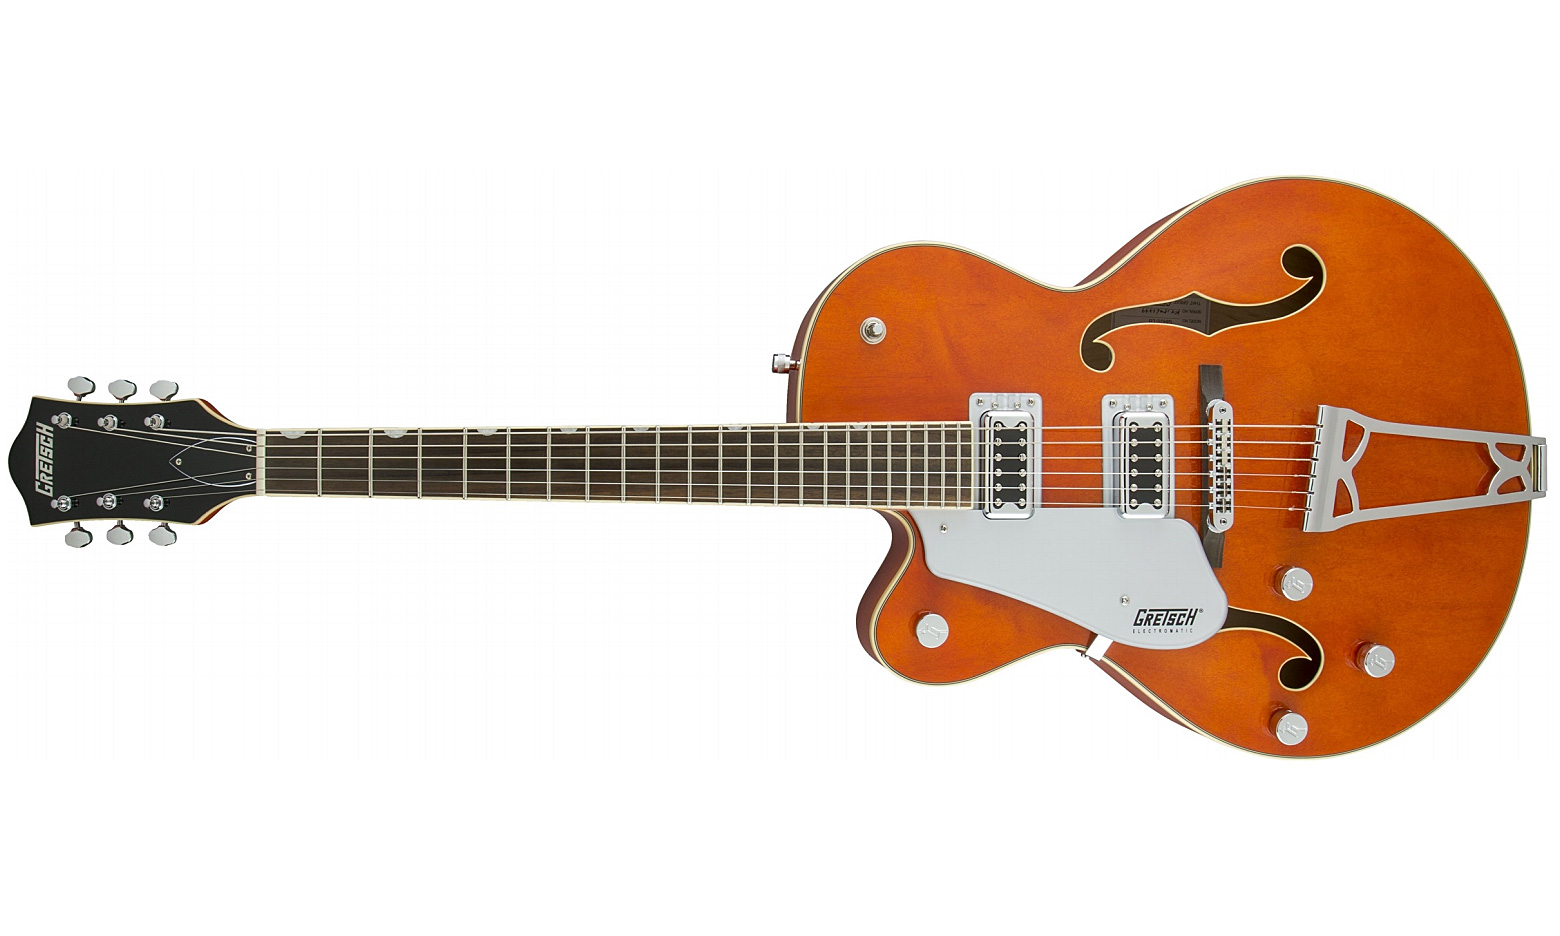 Gretsch G5420lh Electromatic Hollow Body Gaucher 2016 - Orange Stain - Linkshandige elektrische gitaar - Variation 1